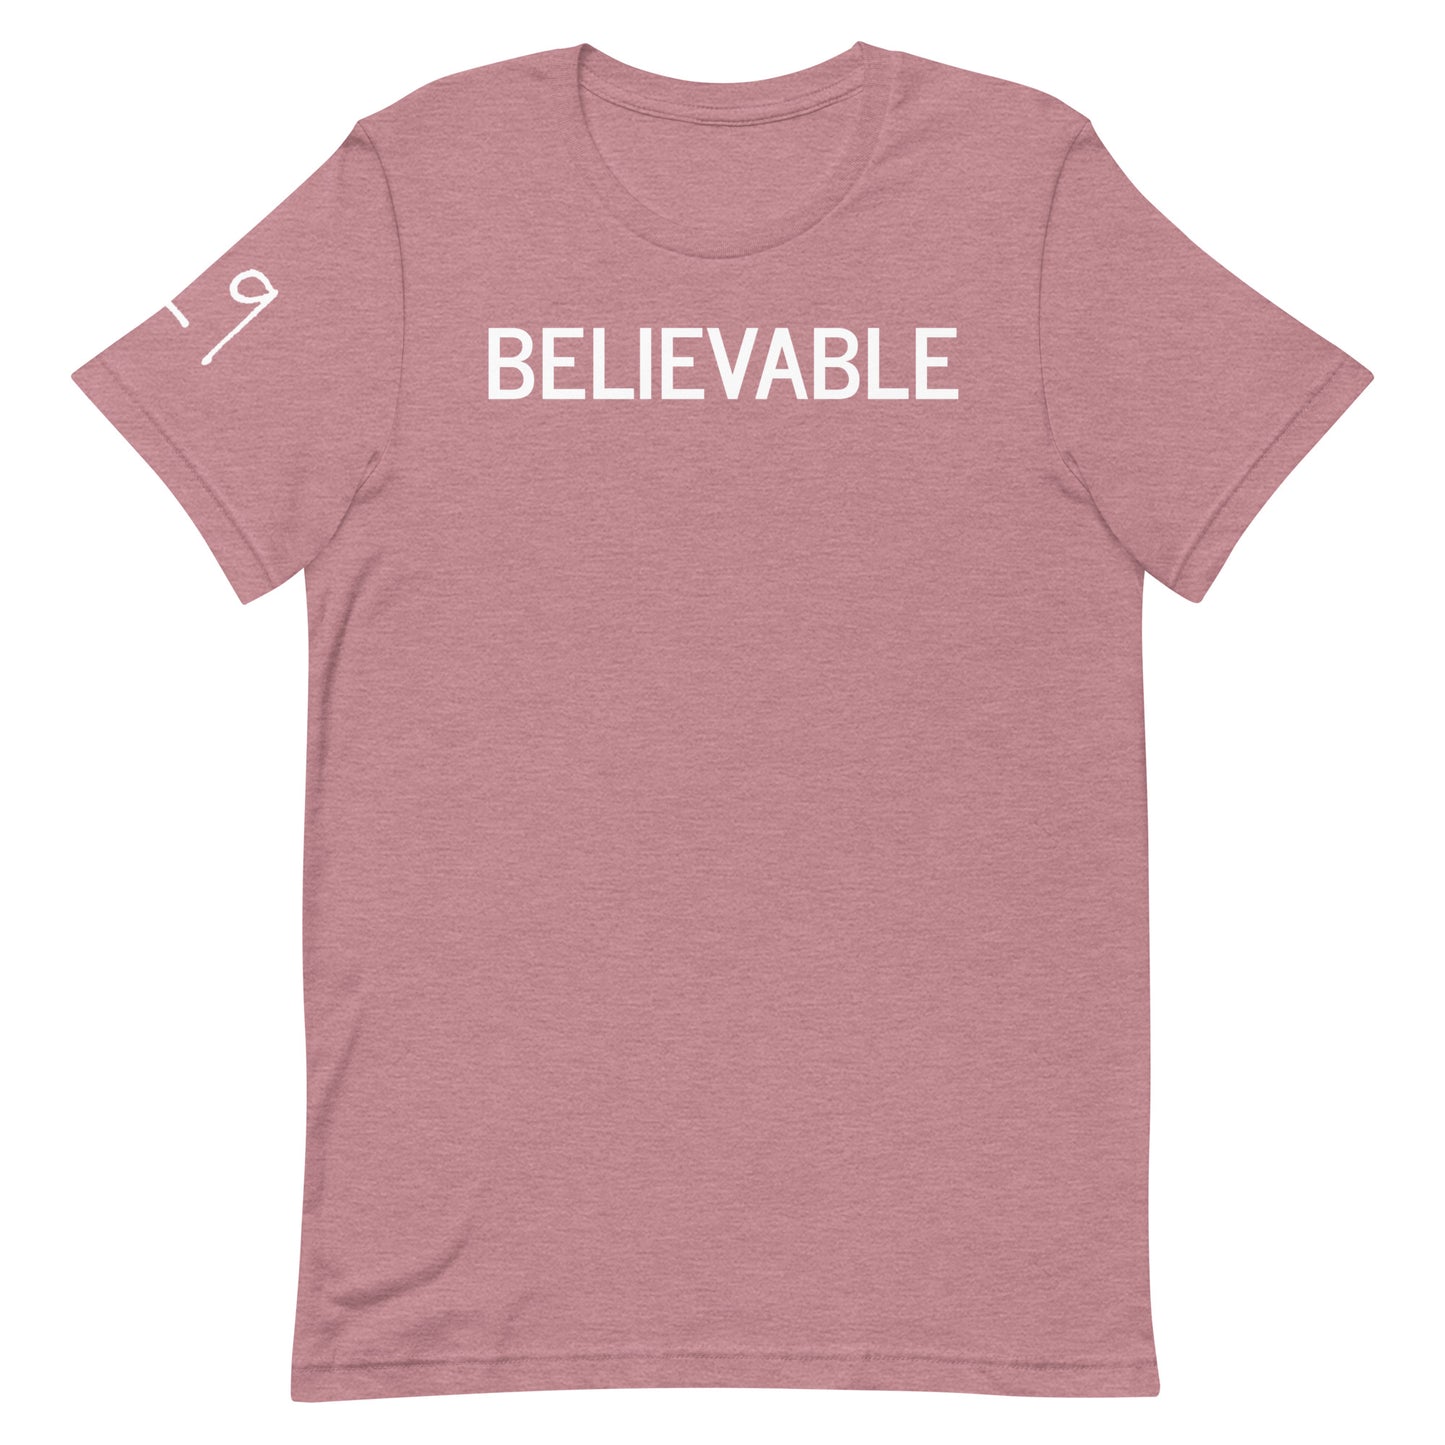 BELIEVABLE Logo T-Shirt